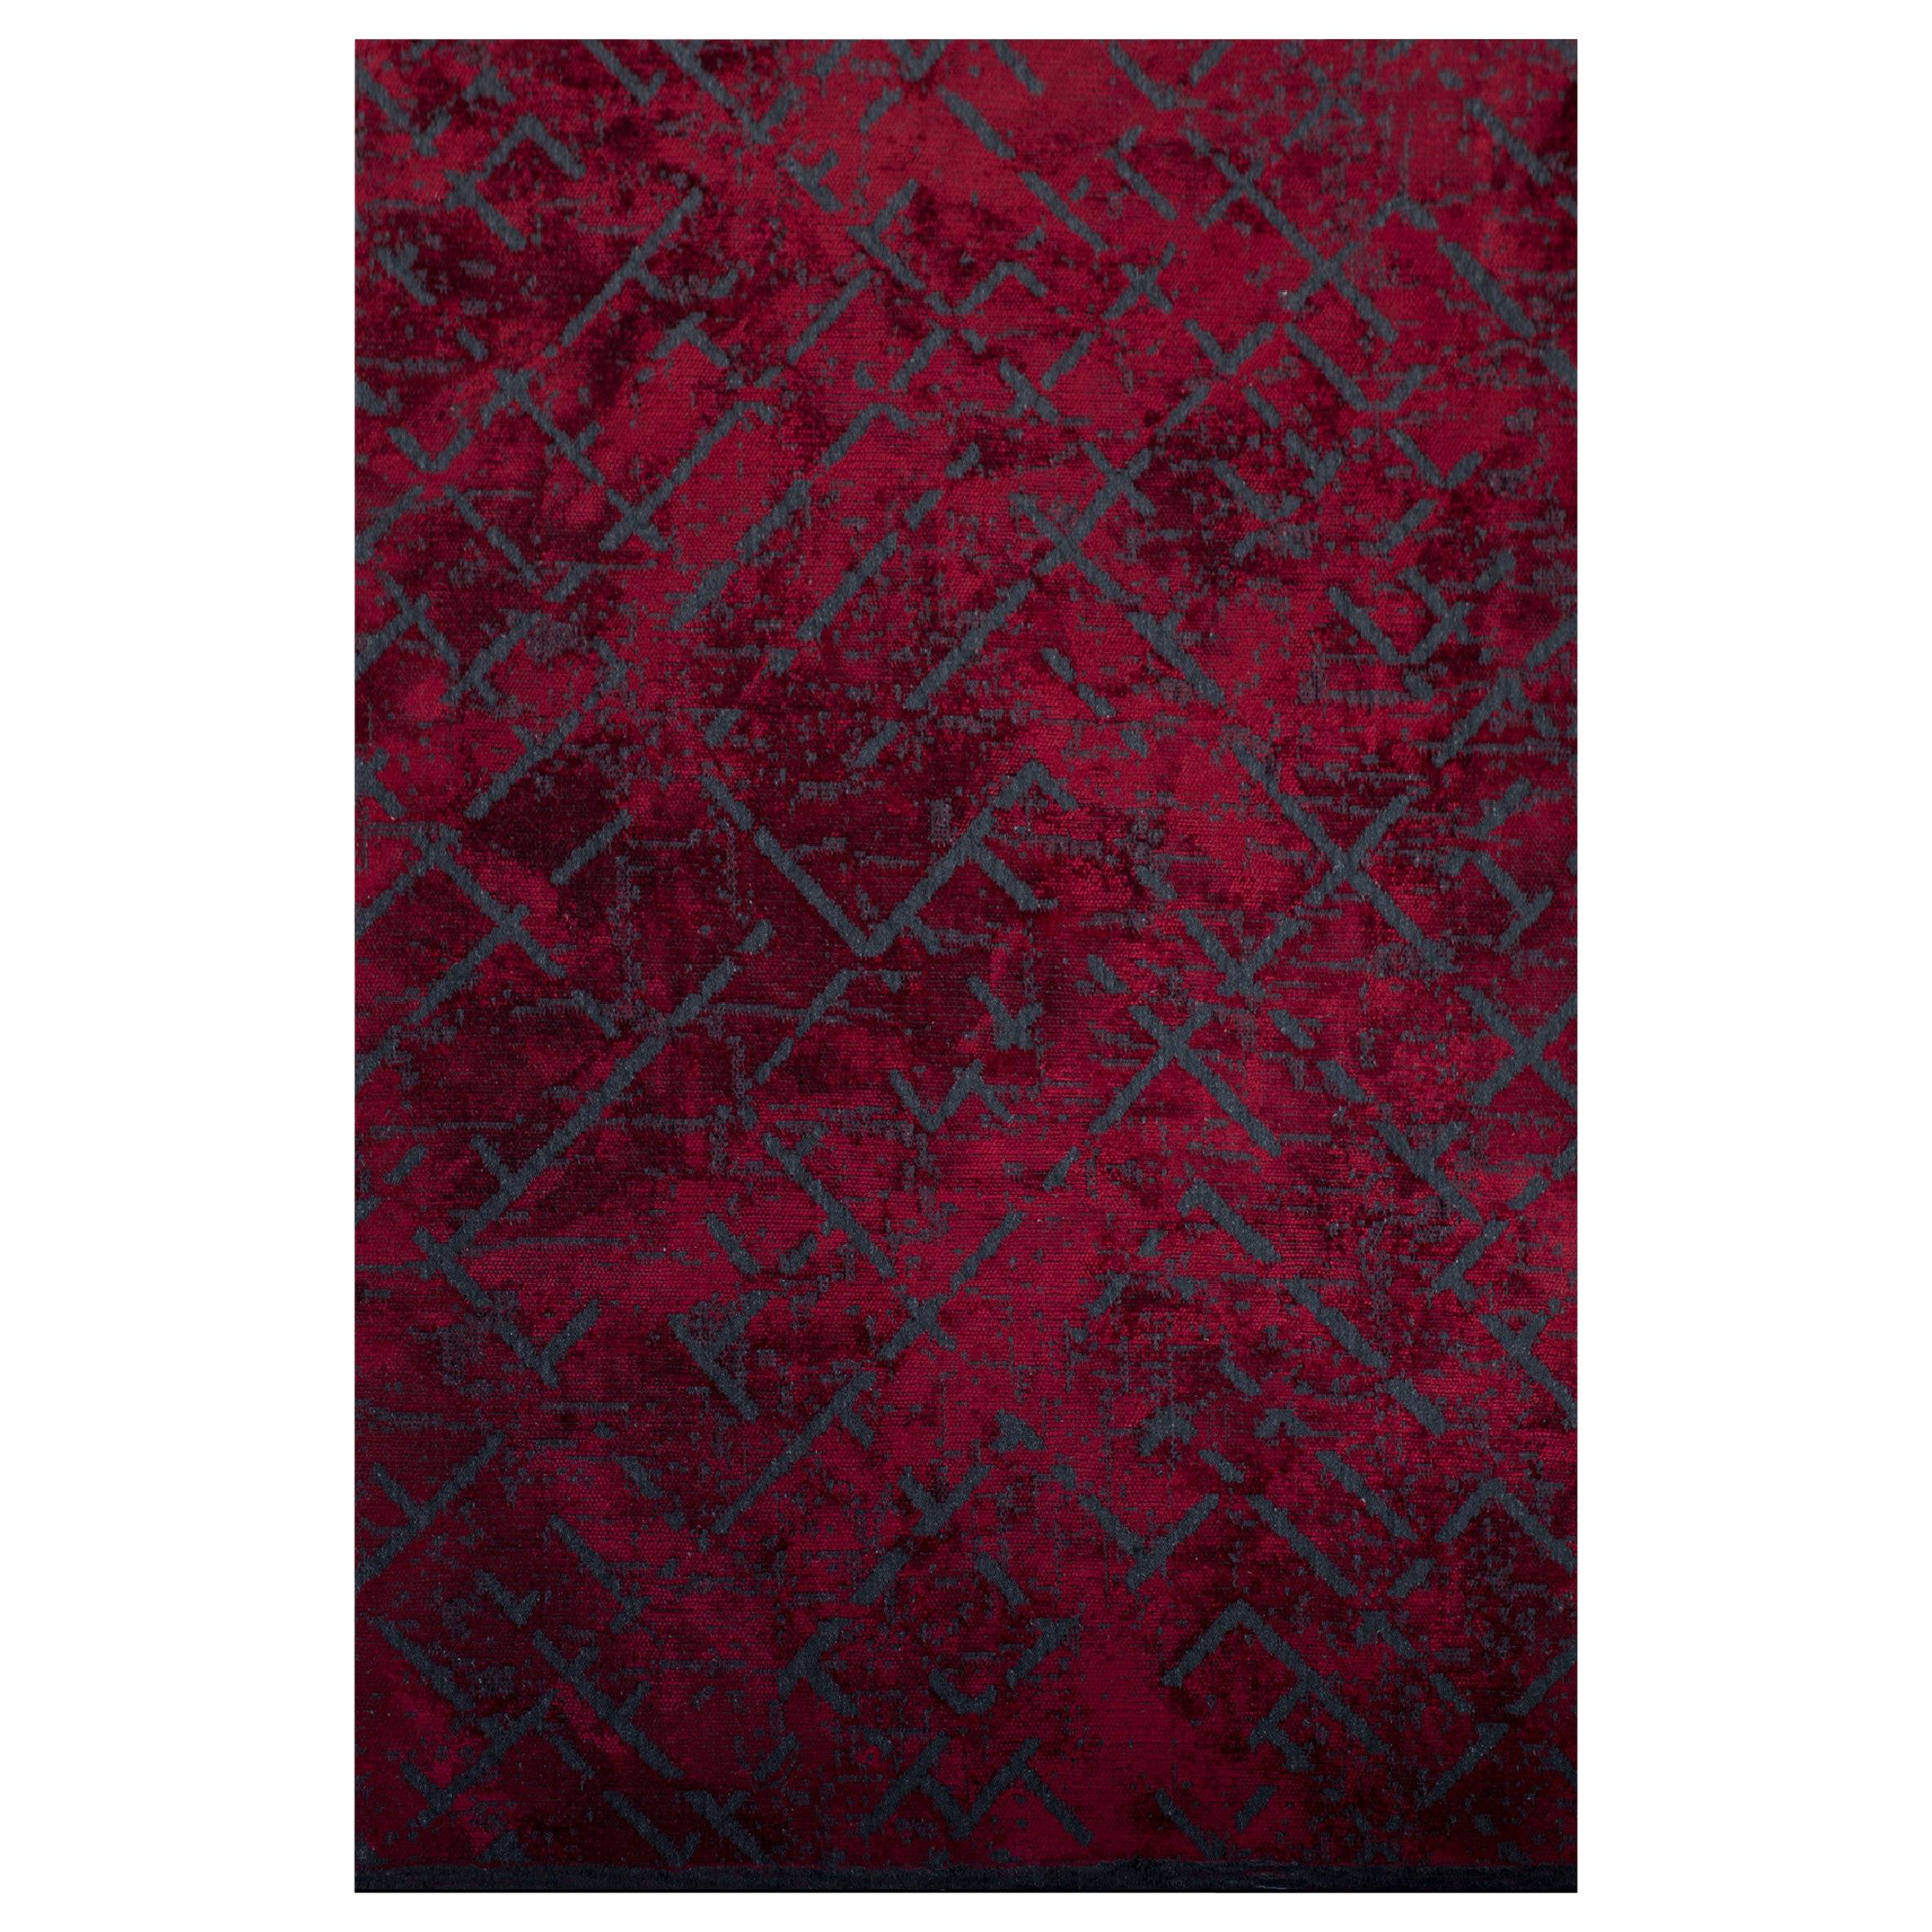 Roter und marineblauer Teppich mit zeitgenössischem abstraktem Muster aus weichem Semi-Plüsch in Rot